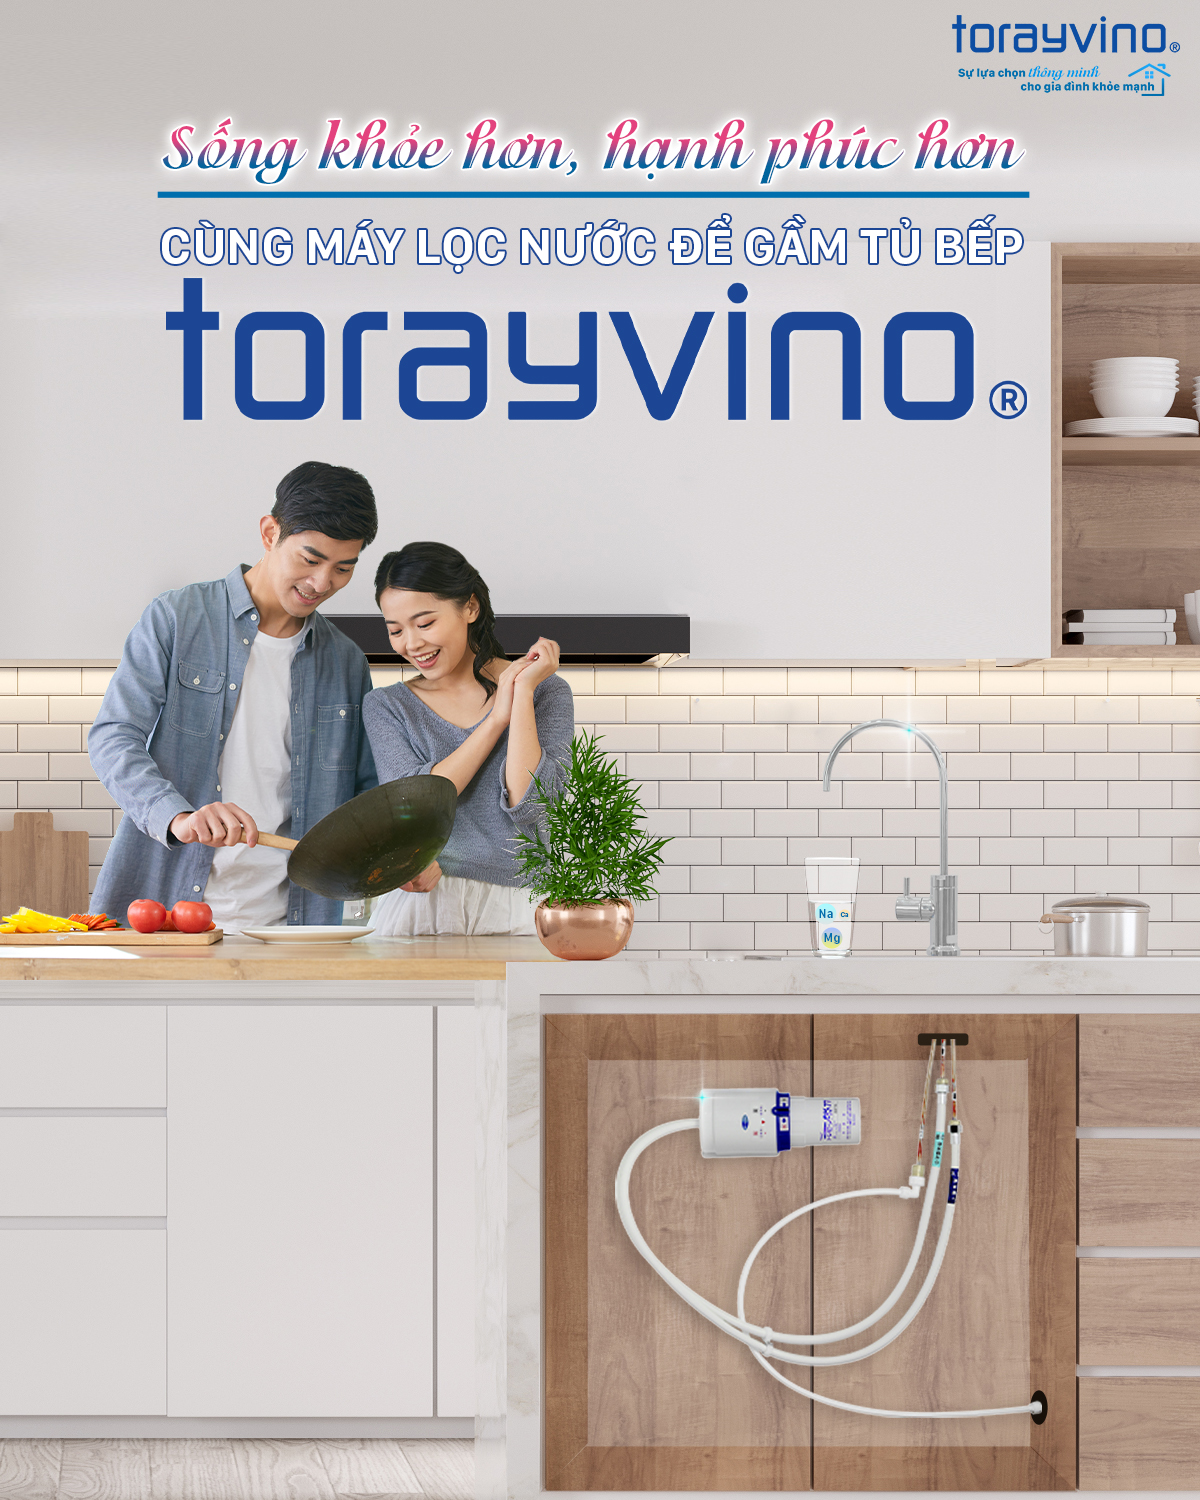 Sống khỏe hơn, hạnh phúc hơn khi có máy lọc nước để gầm tủ bếp Torayvino